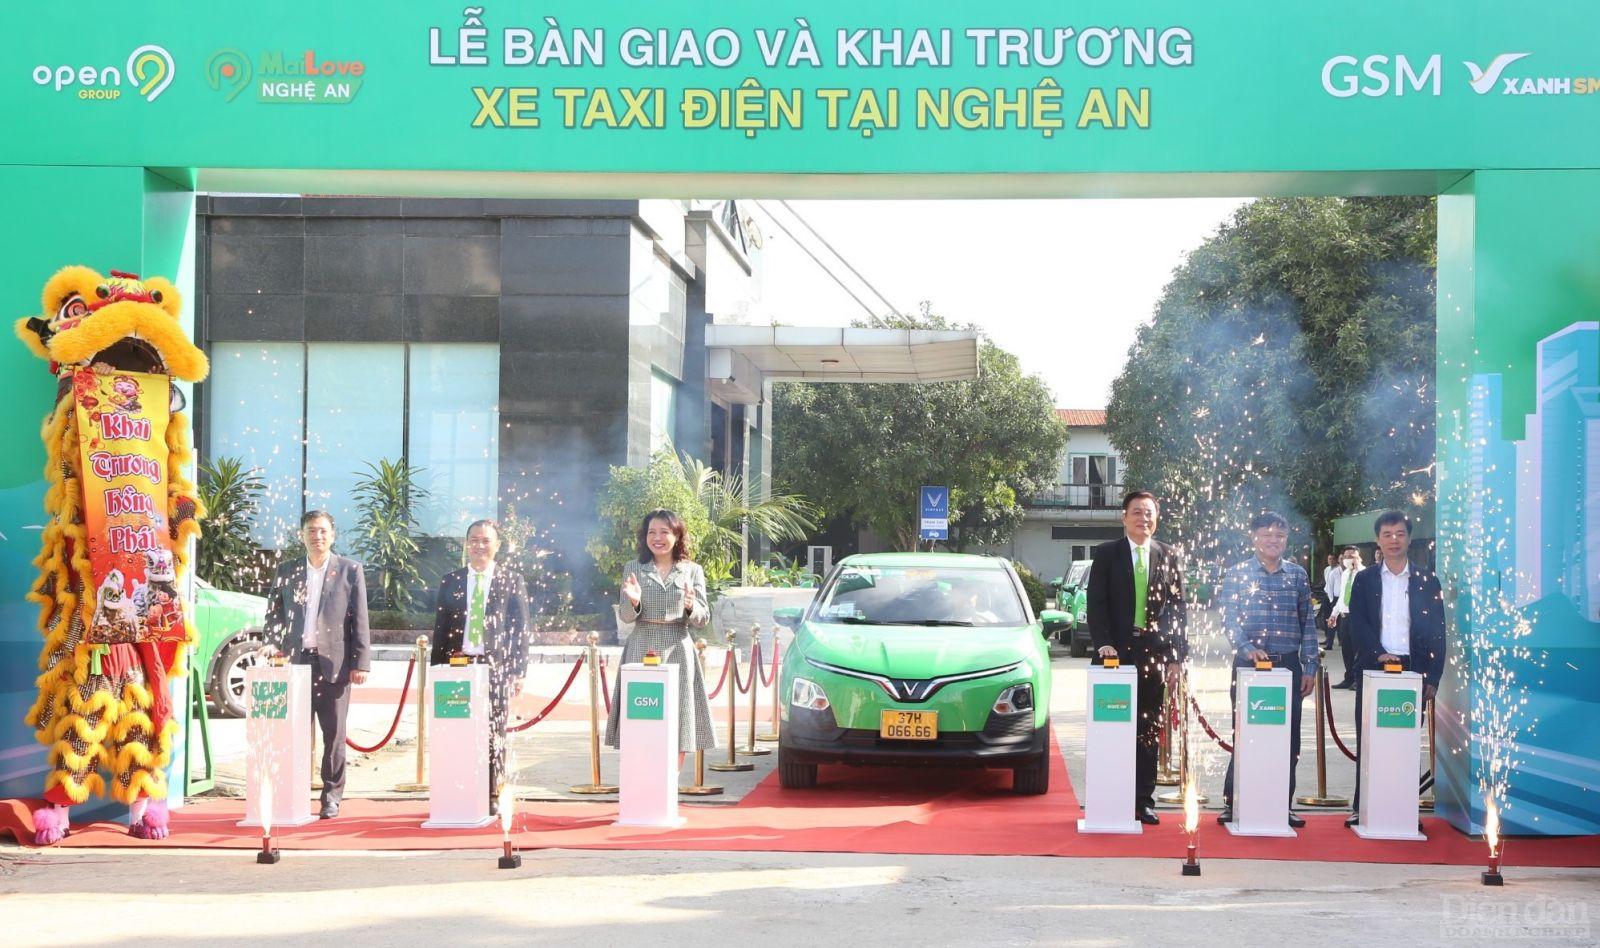 Công ty TNHH Vận tải Quốc tế Sơn Nam với thương hiệu xe taxi MaiLove là đơn vị kinh doanh vận tải hành khách bằng taxi tiên phong, đầu tiên thực hiện chuyển đổi sang ô tô điện theo chỉ đạo của Chính phủ và UBND tỉnh Nghệ An